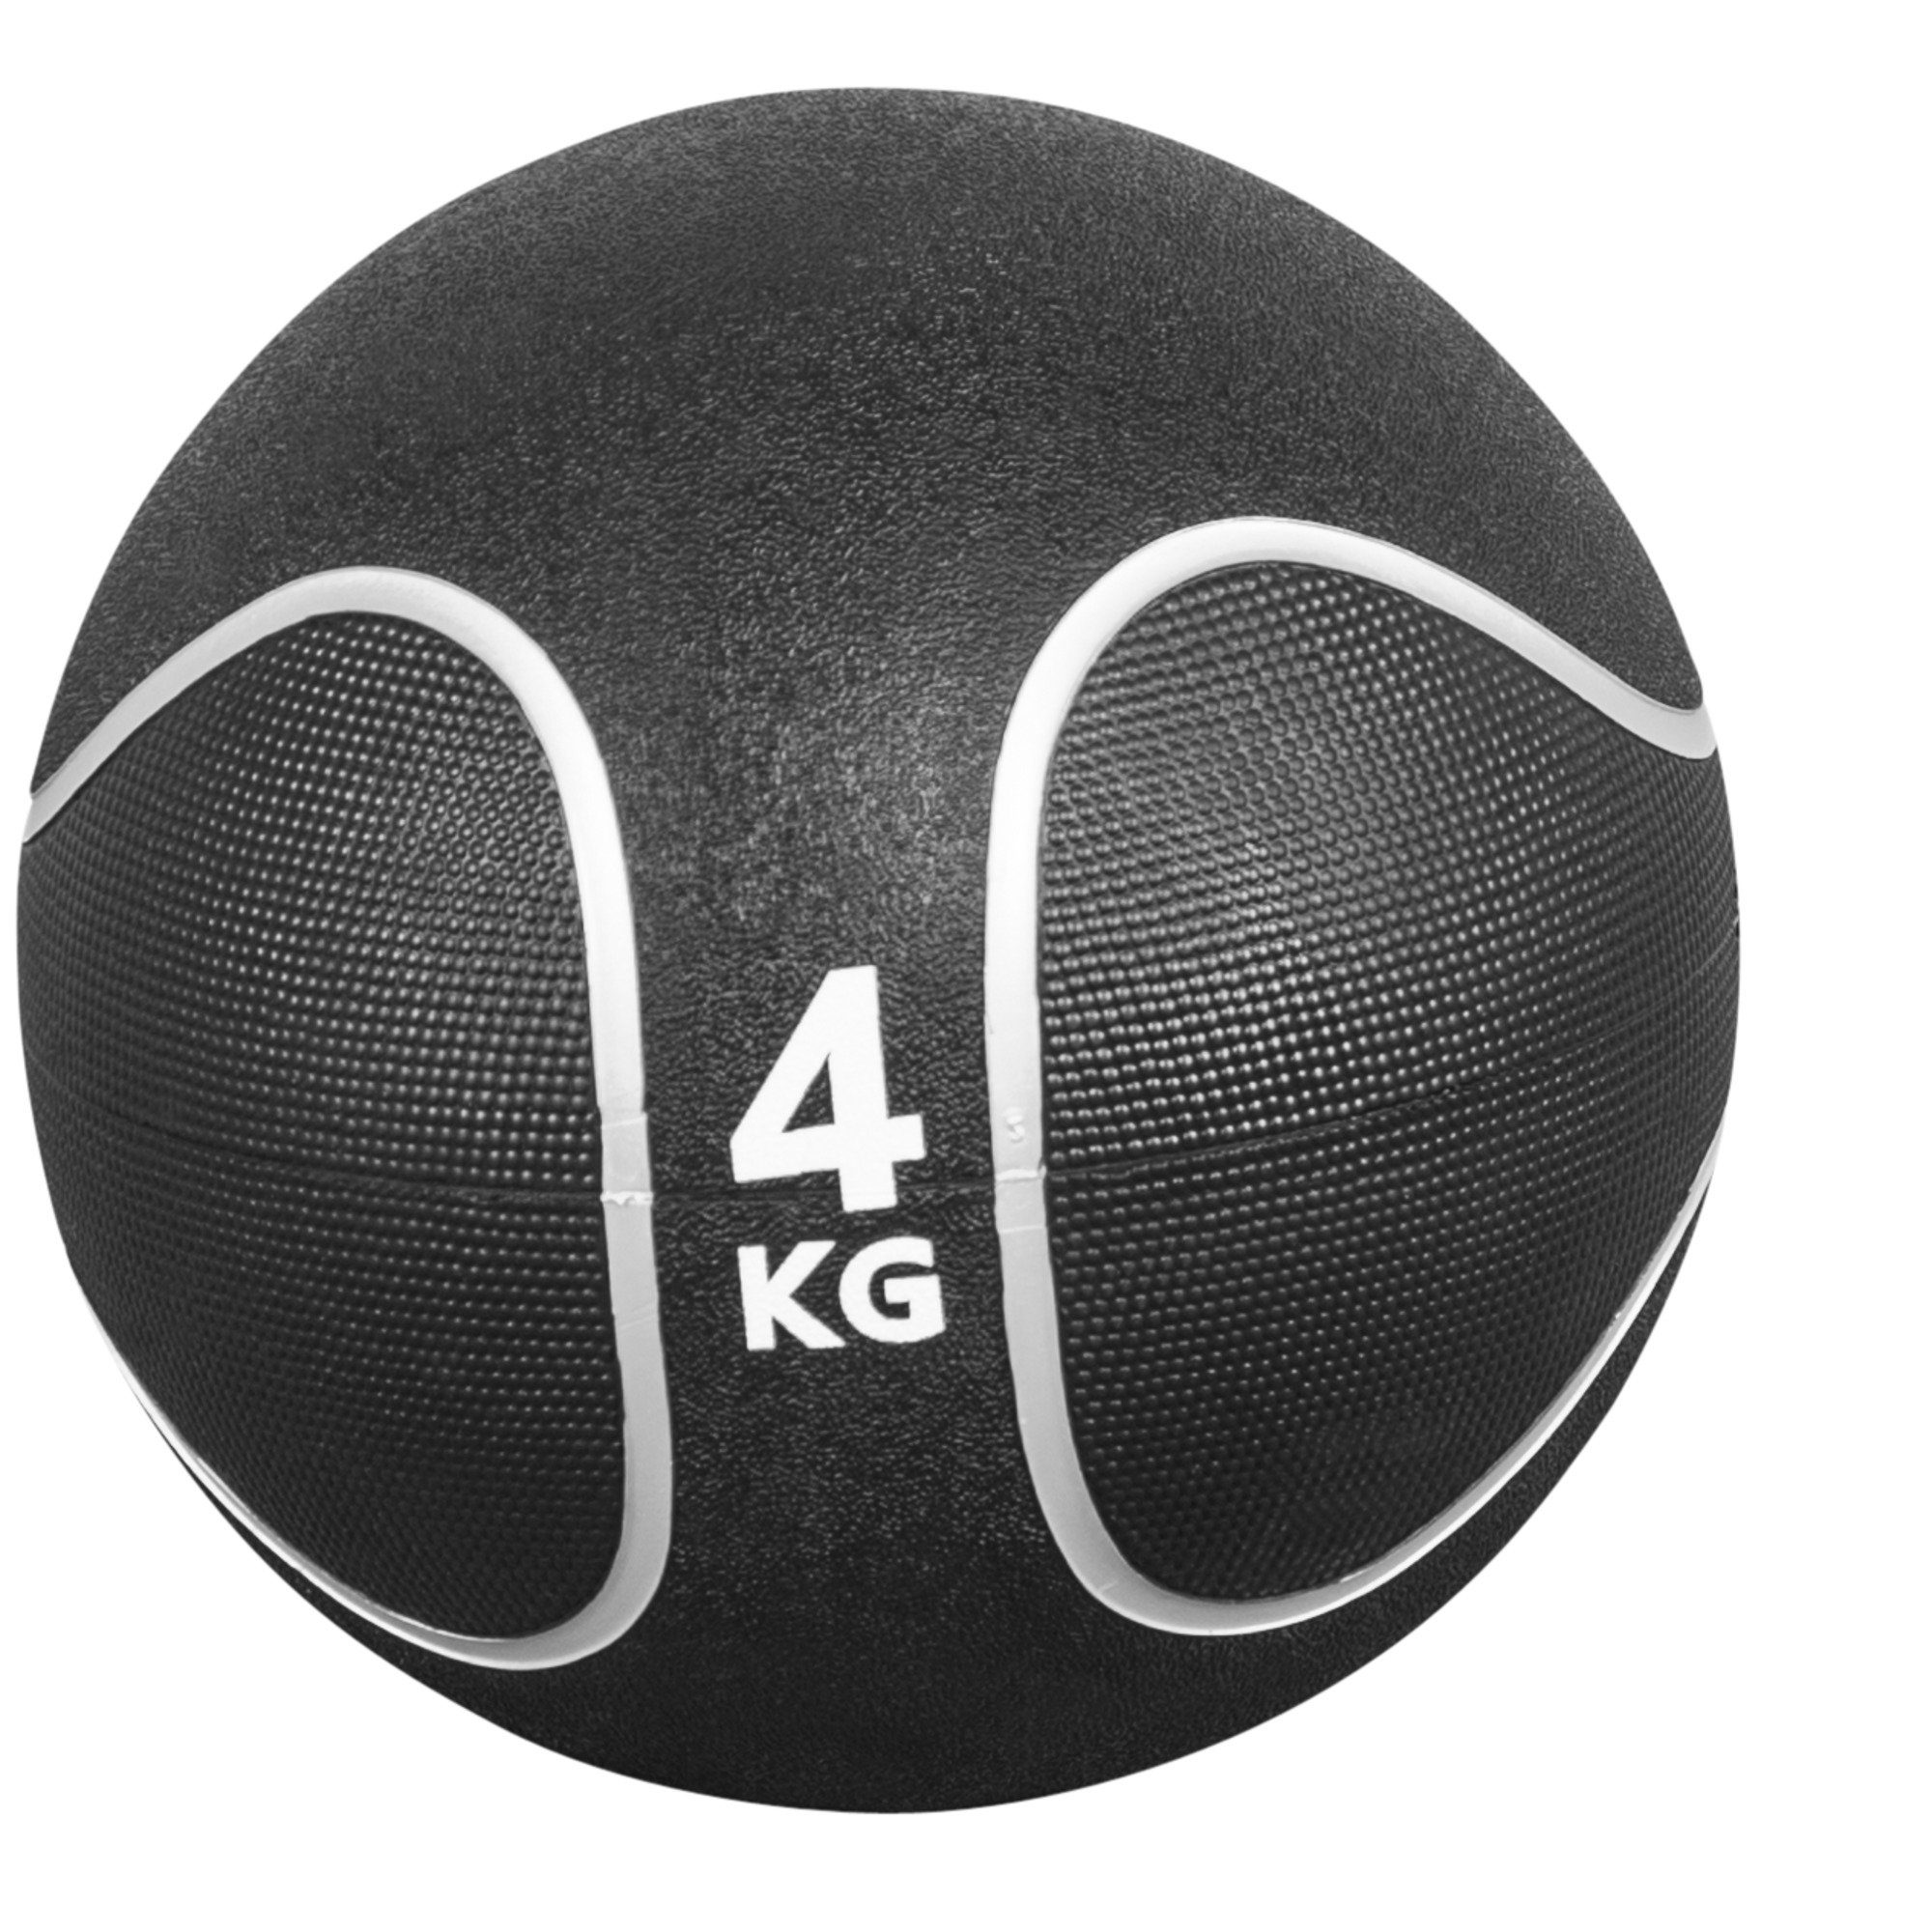 23 cm, / Gummi, GORILLA Fitnessball aus Set, 29 KG Ø SPORTS 4 rutschfest, Medizinball Einzeln oder